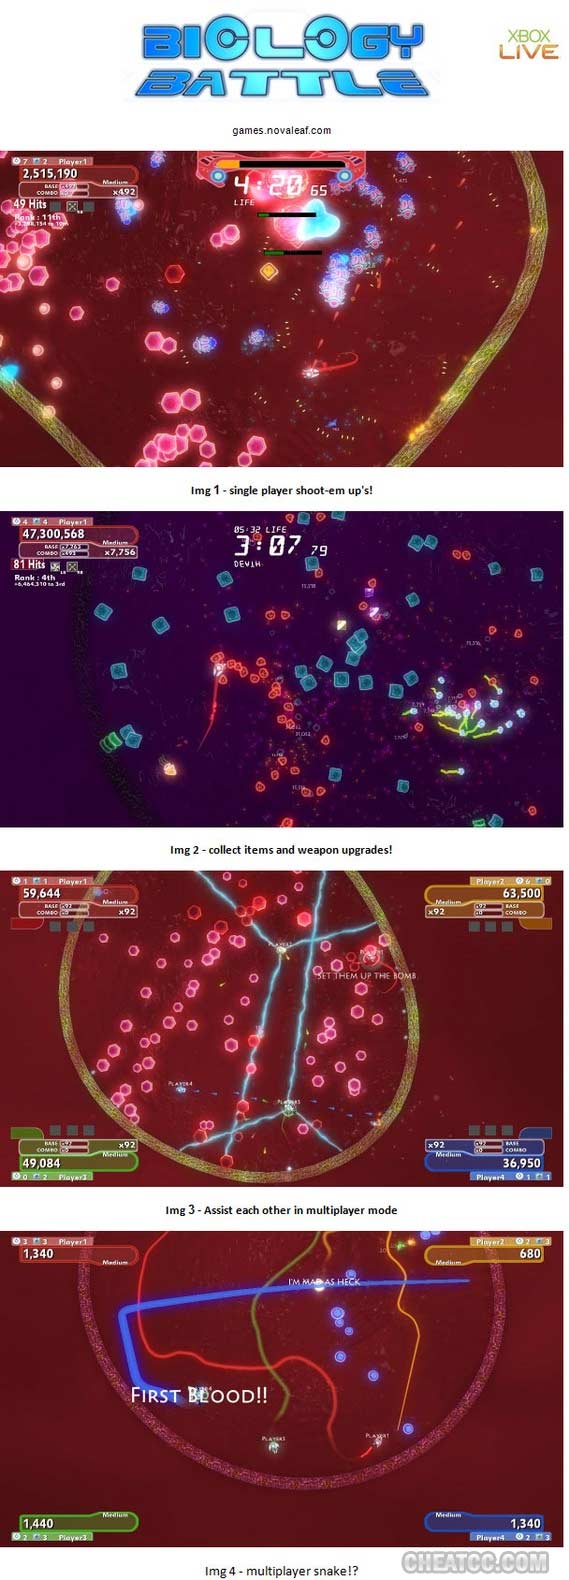 Biology Battle image